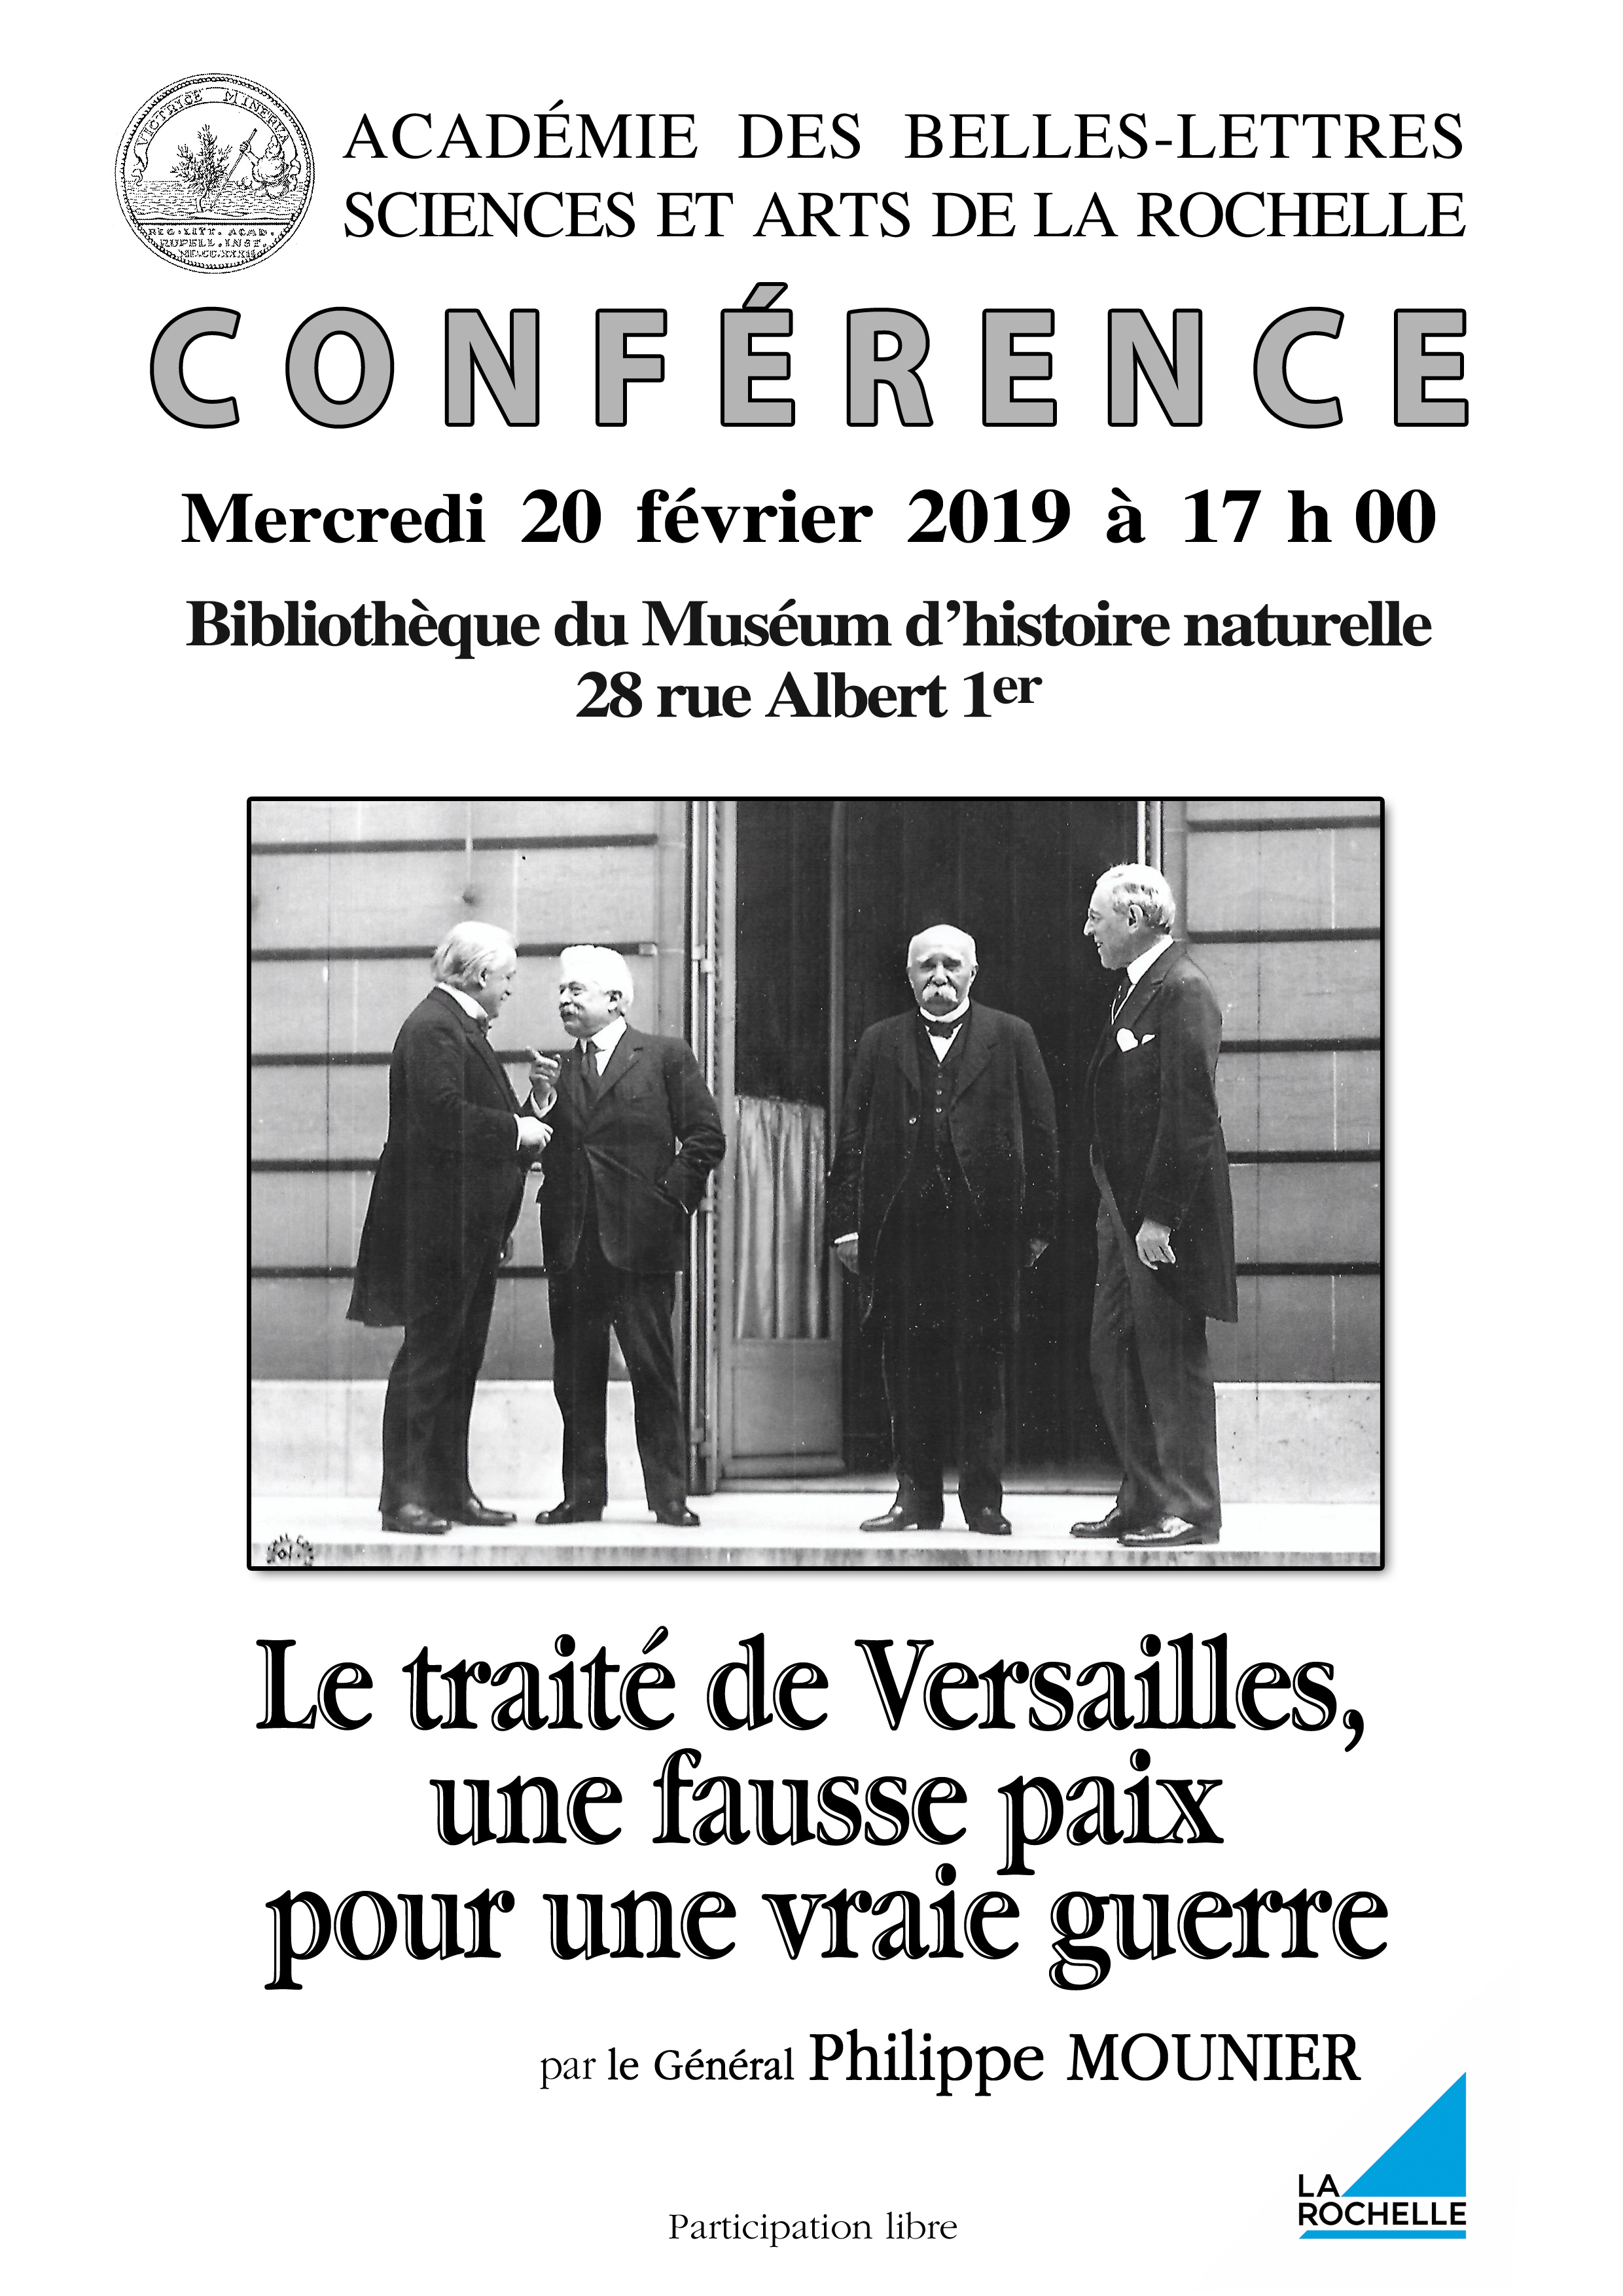 Conférence : le traité de Versailles  » une fausse paix pour une vraie guerre »